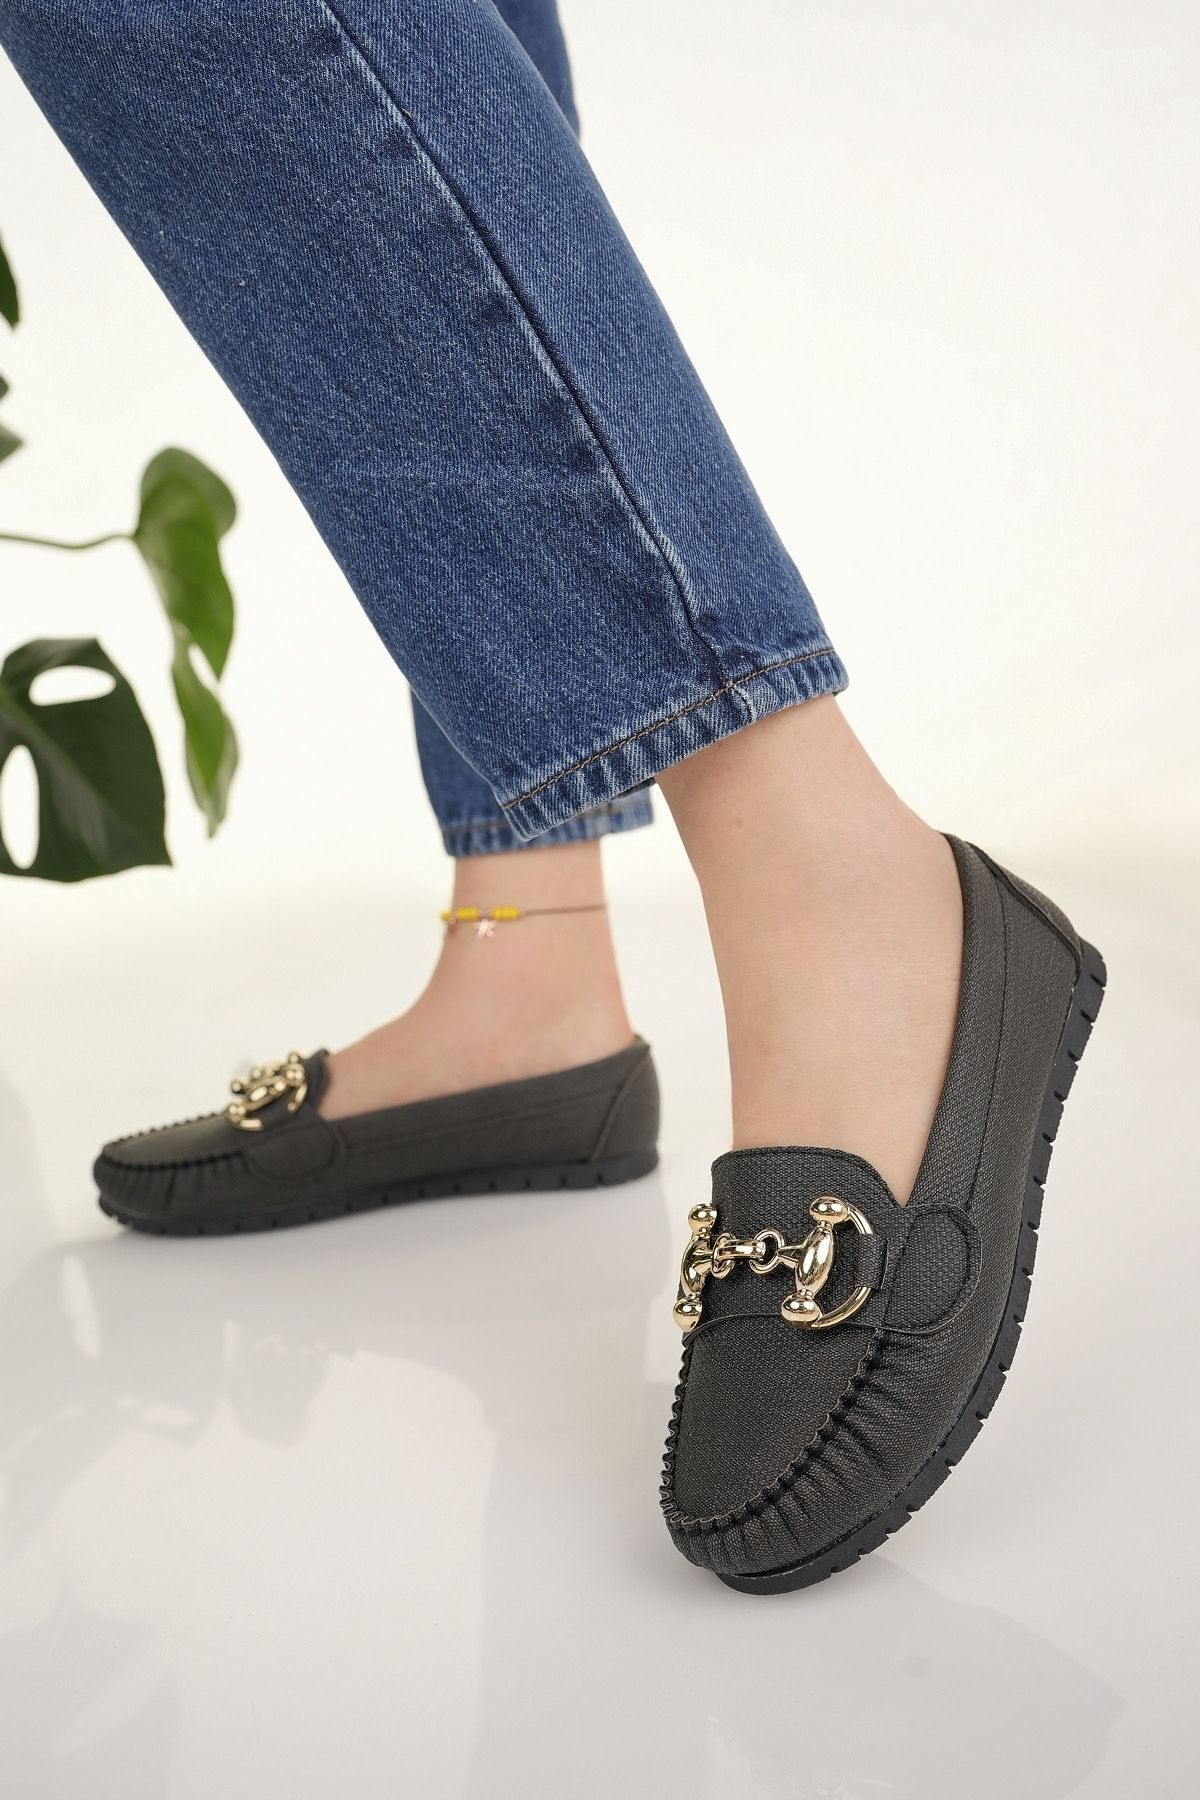 Modafırsat Kadın Babet Siyah Zincir Tokalı Hafif Rahat Taban Şık Günlük Ayakkabı